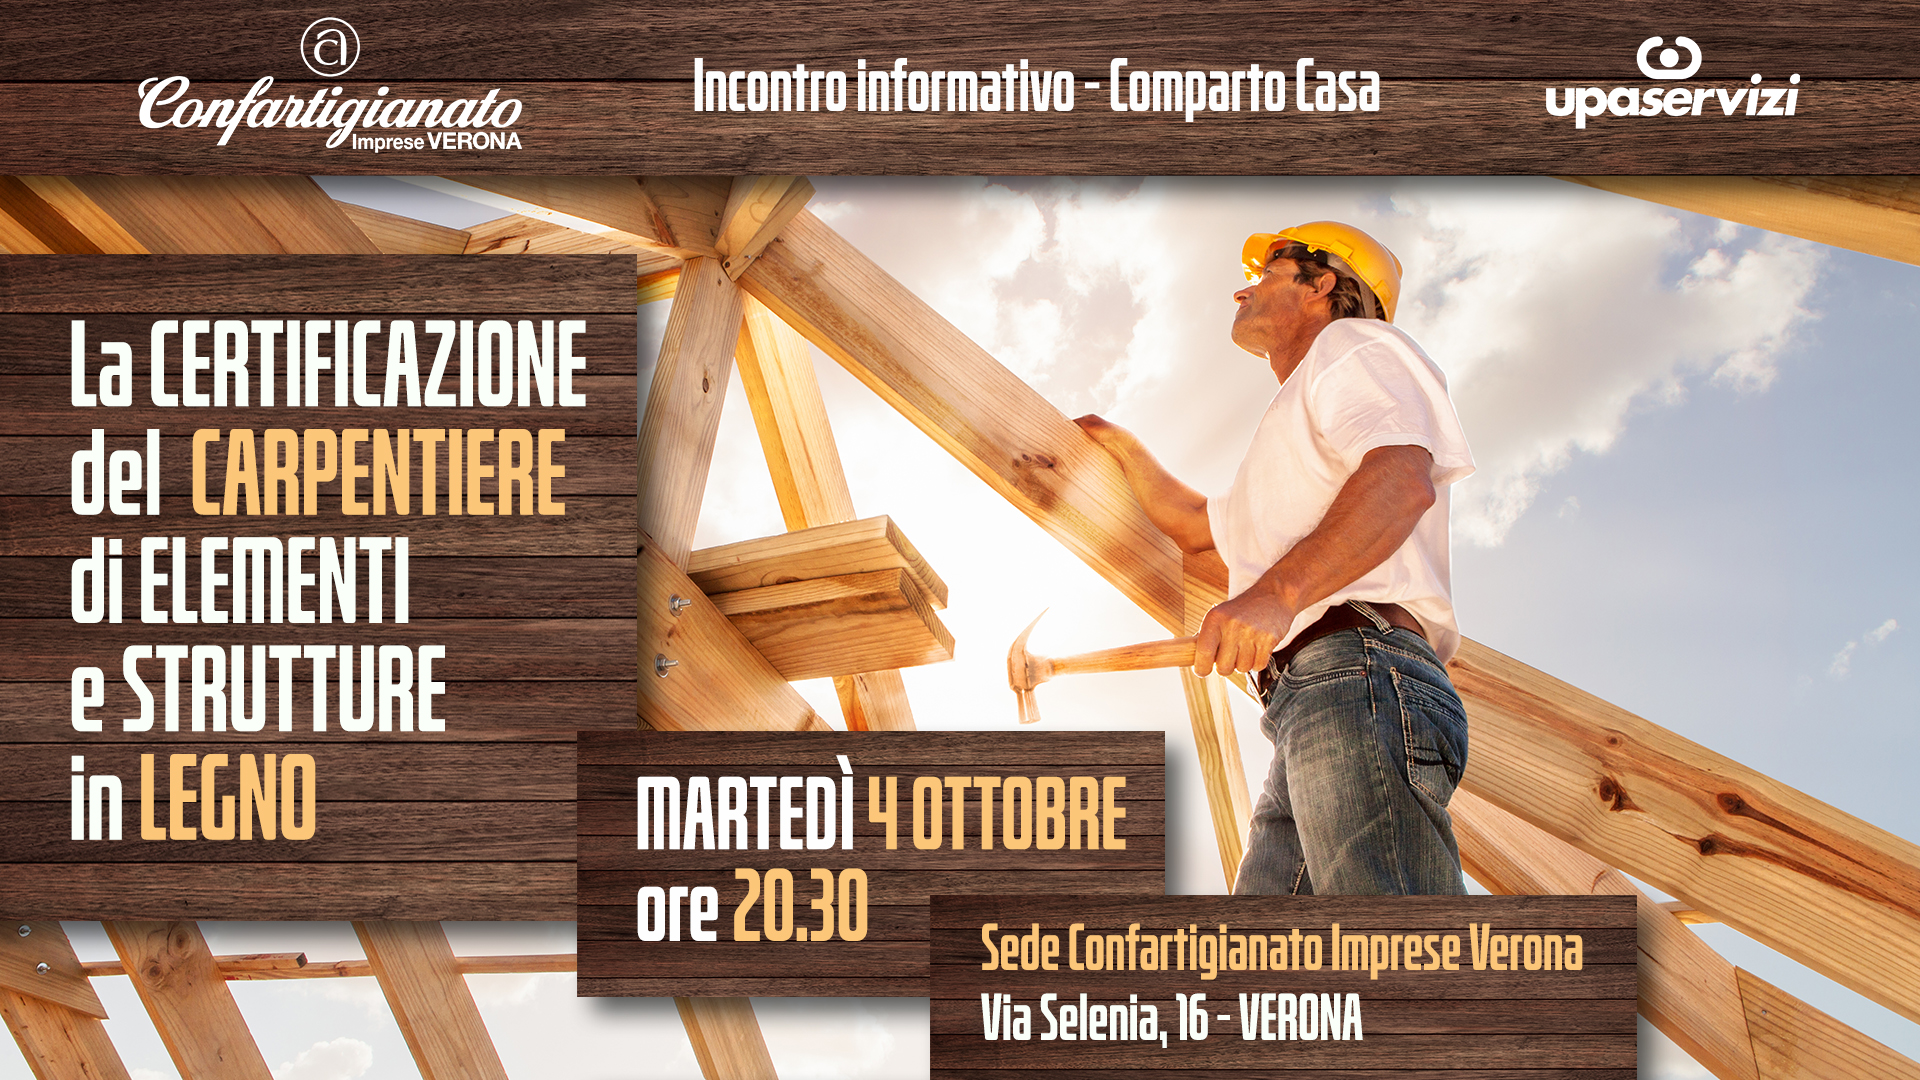 COMPARTO CASA – La certificazione del carpentiere di elementi e strutture in legno: incontro il 4 ottobre. Iscriviti